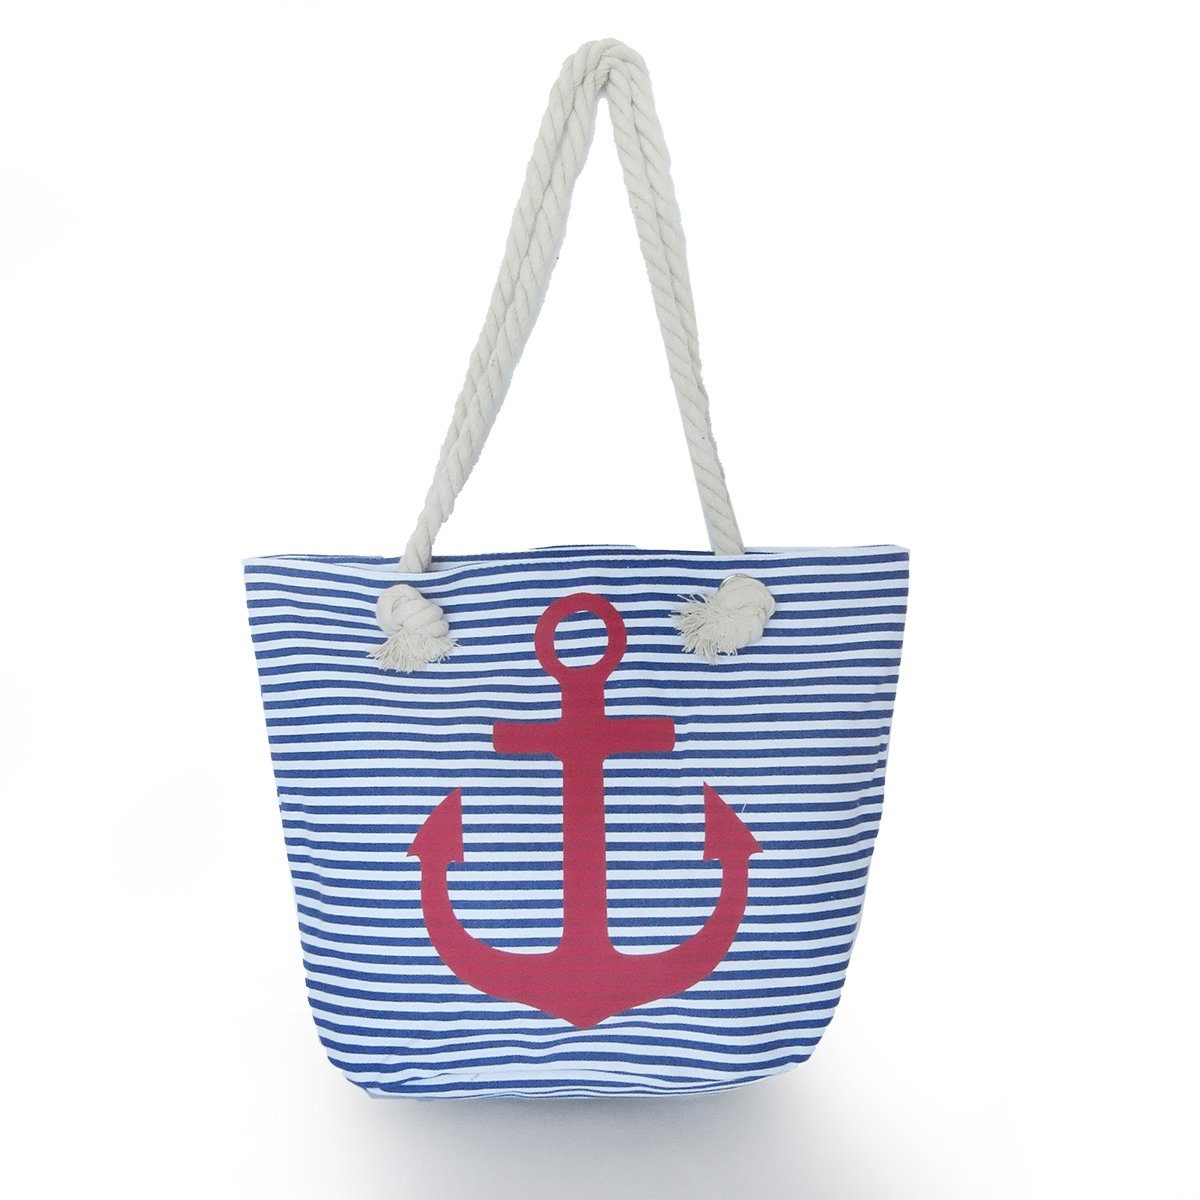 Sonia Originelli Umhängetasche Strandtasche mit Ankermotiv Beachbag Shopper Streifen Maritim blau-rot